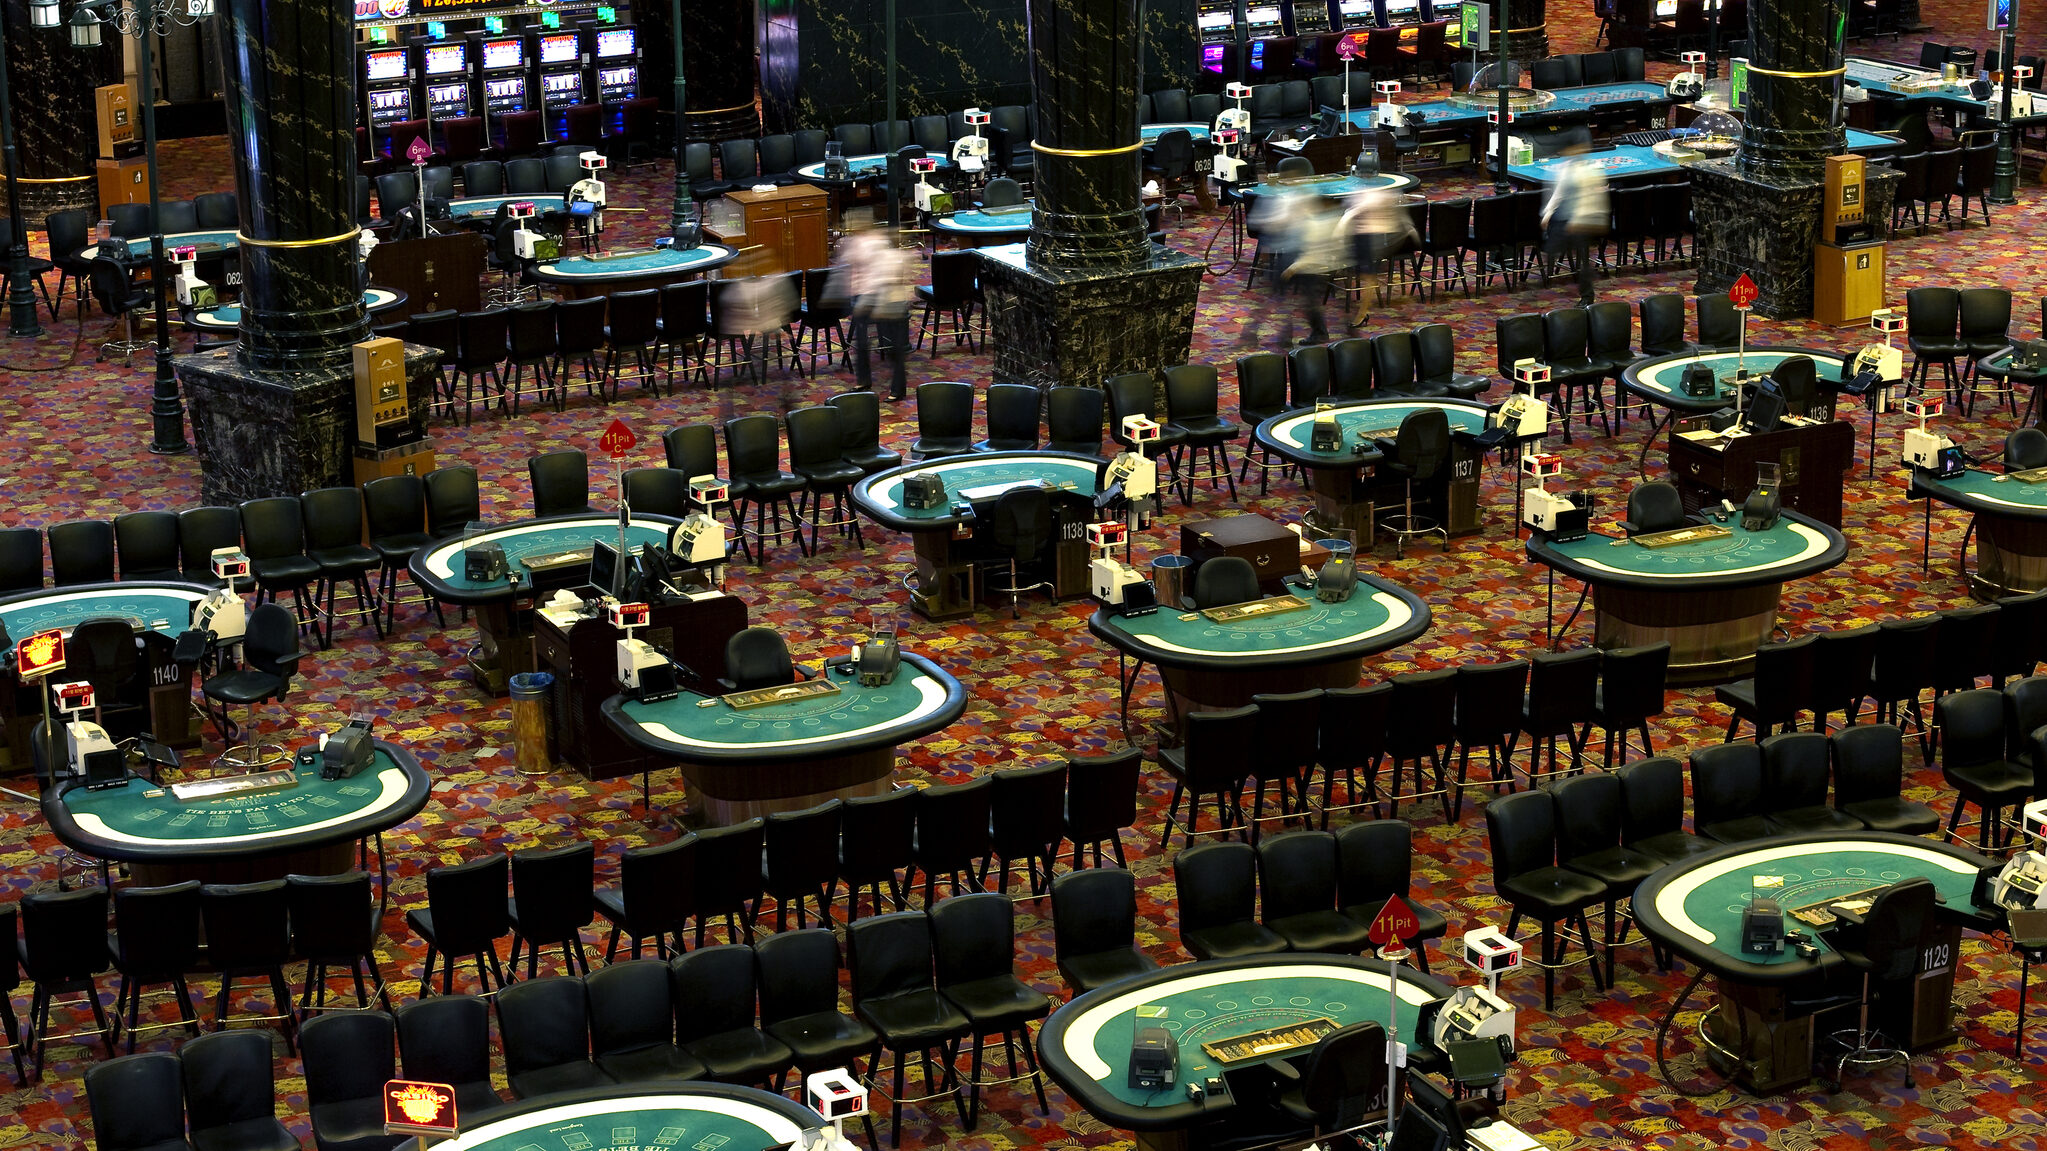 casino sites bonus